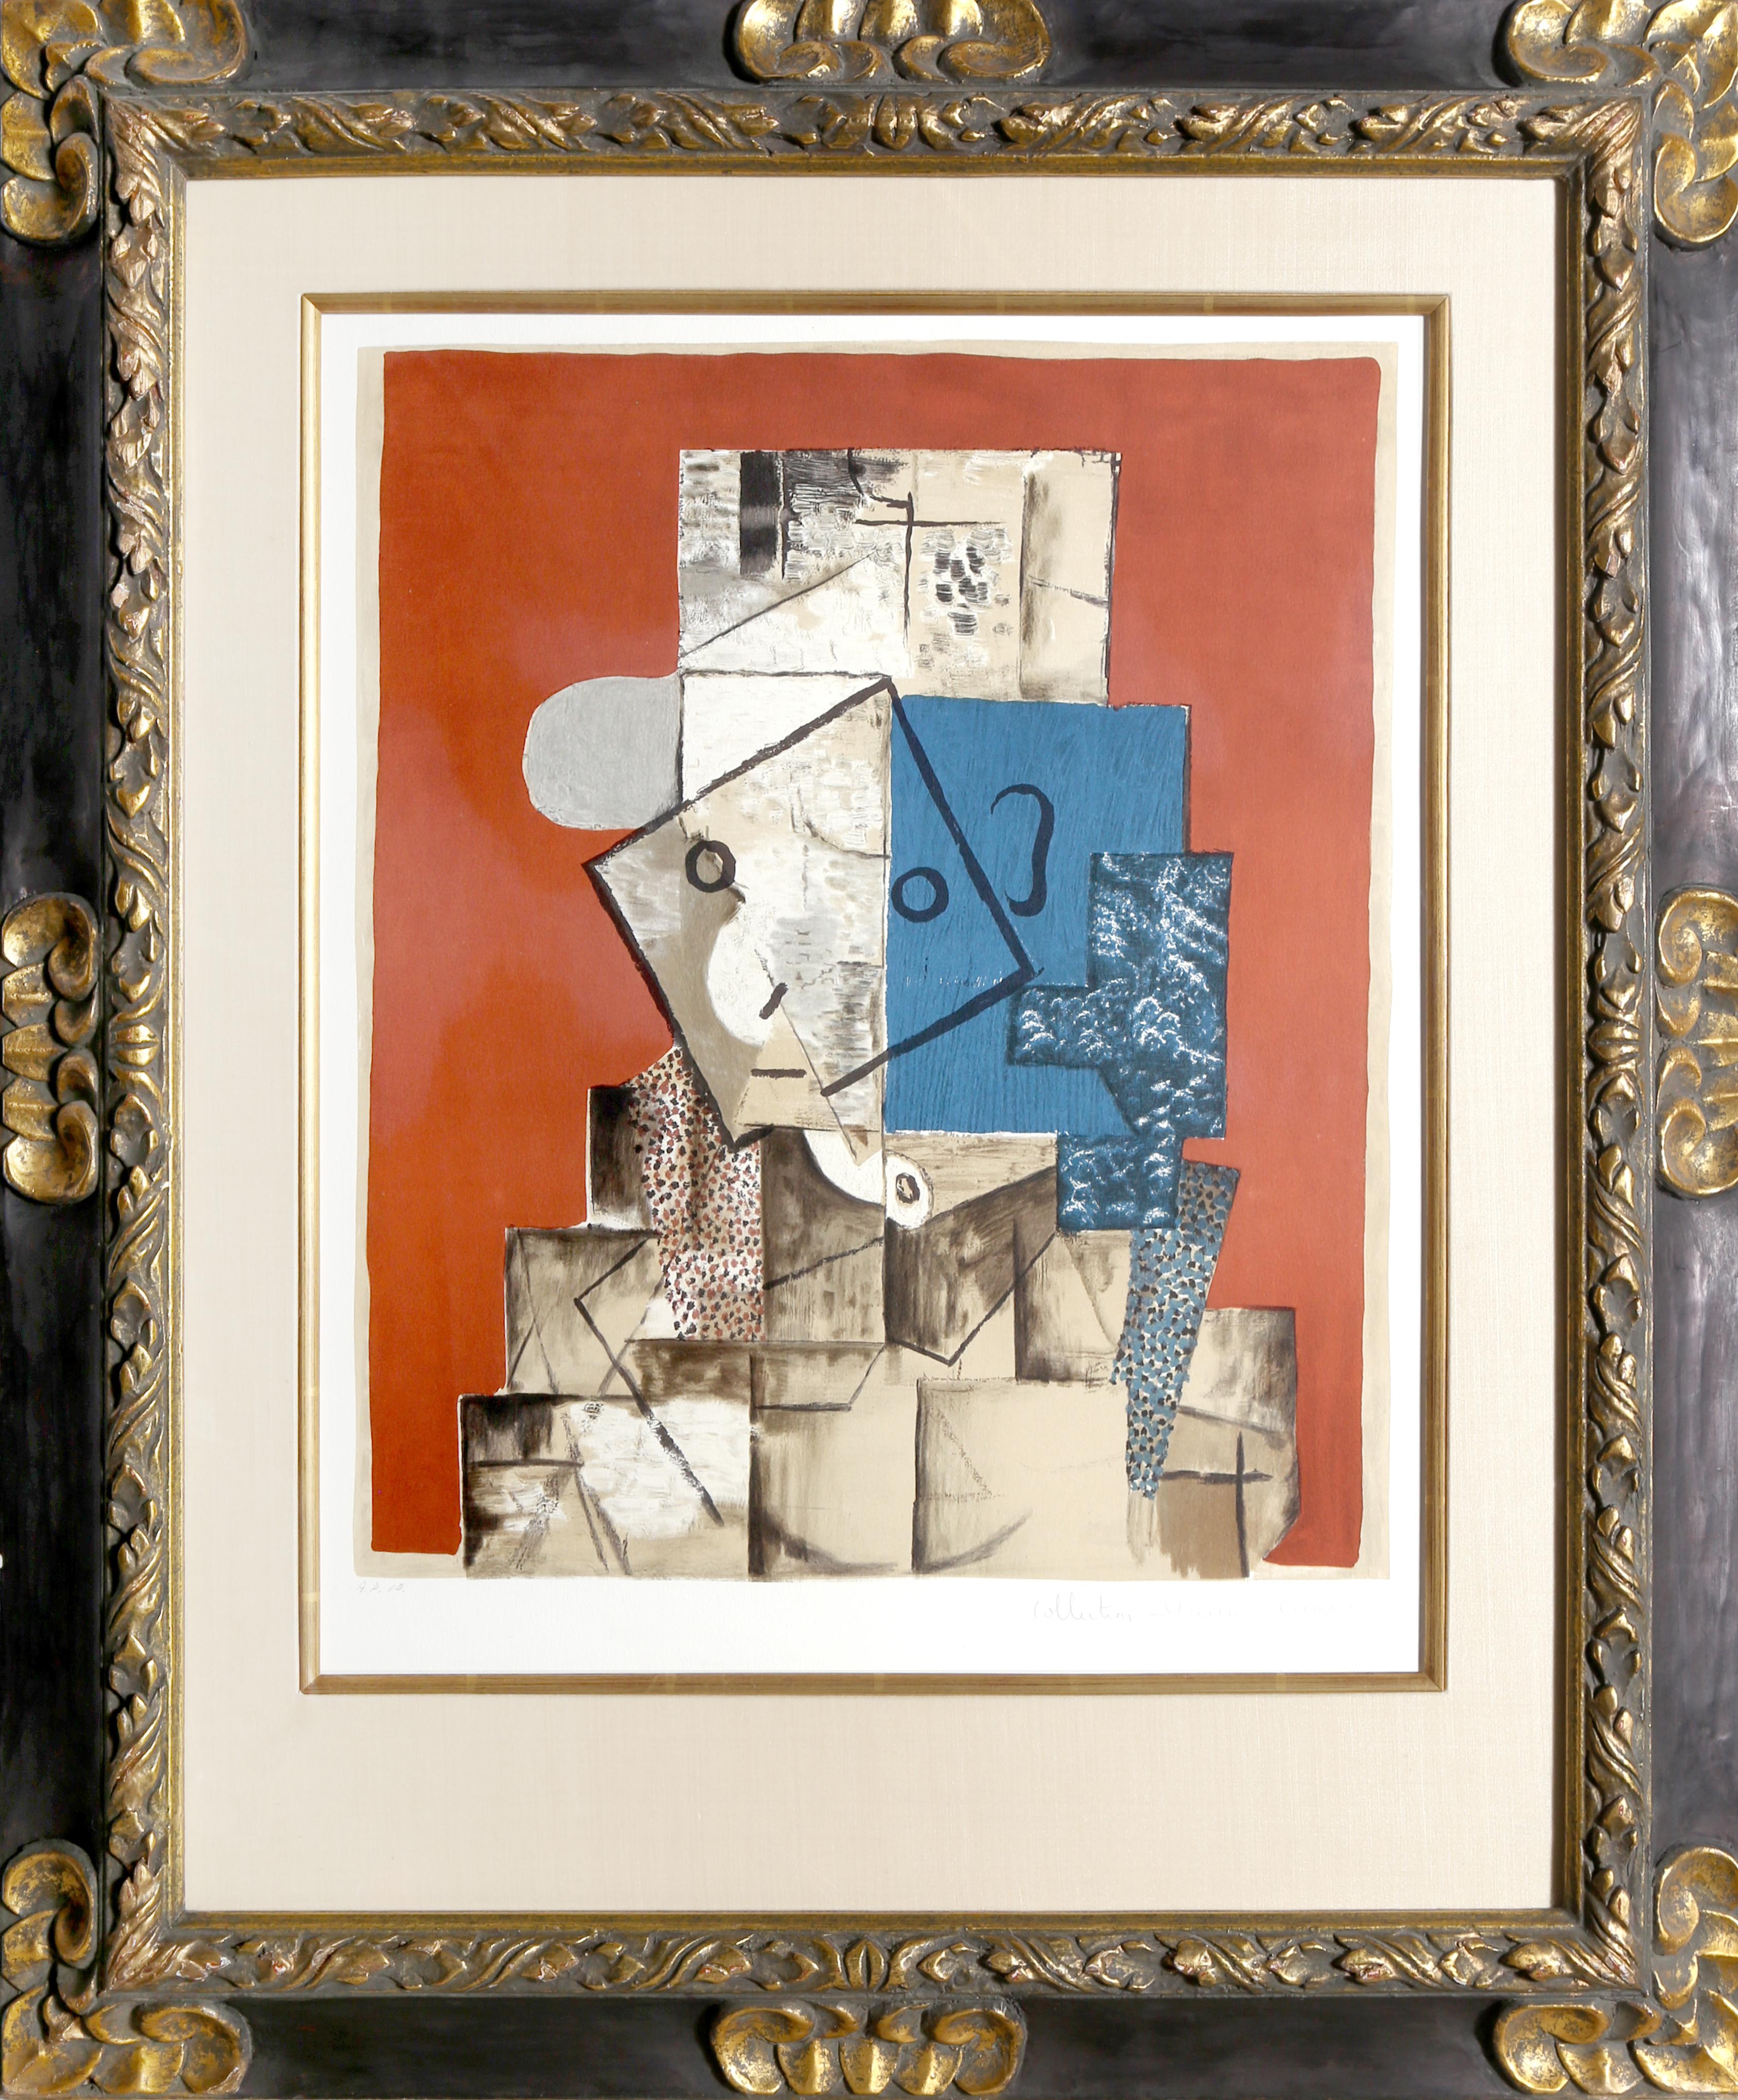 Une lithographie de la Collection S de Marina Picasso d'après le tableau de Pablo Picasso "Visage sur Fond Rouge".  La peinture originale a été achevée en 1914. Dans les années 1970, après la mort de Picasso, Marina Picasso, sa petite-fille, a